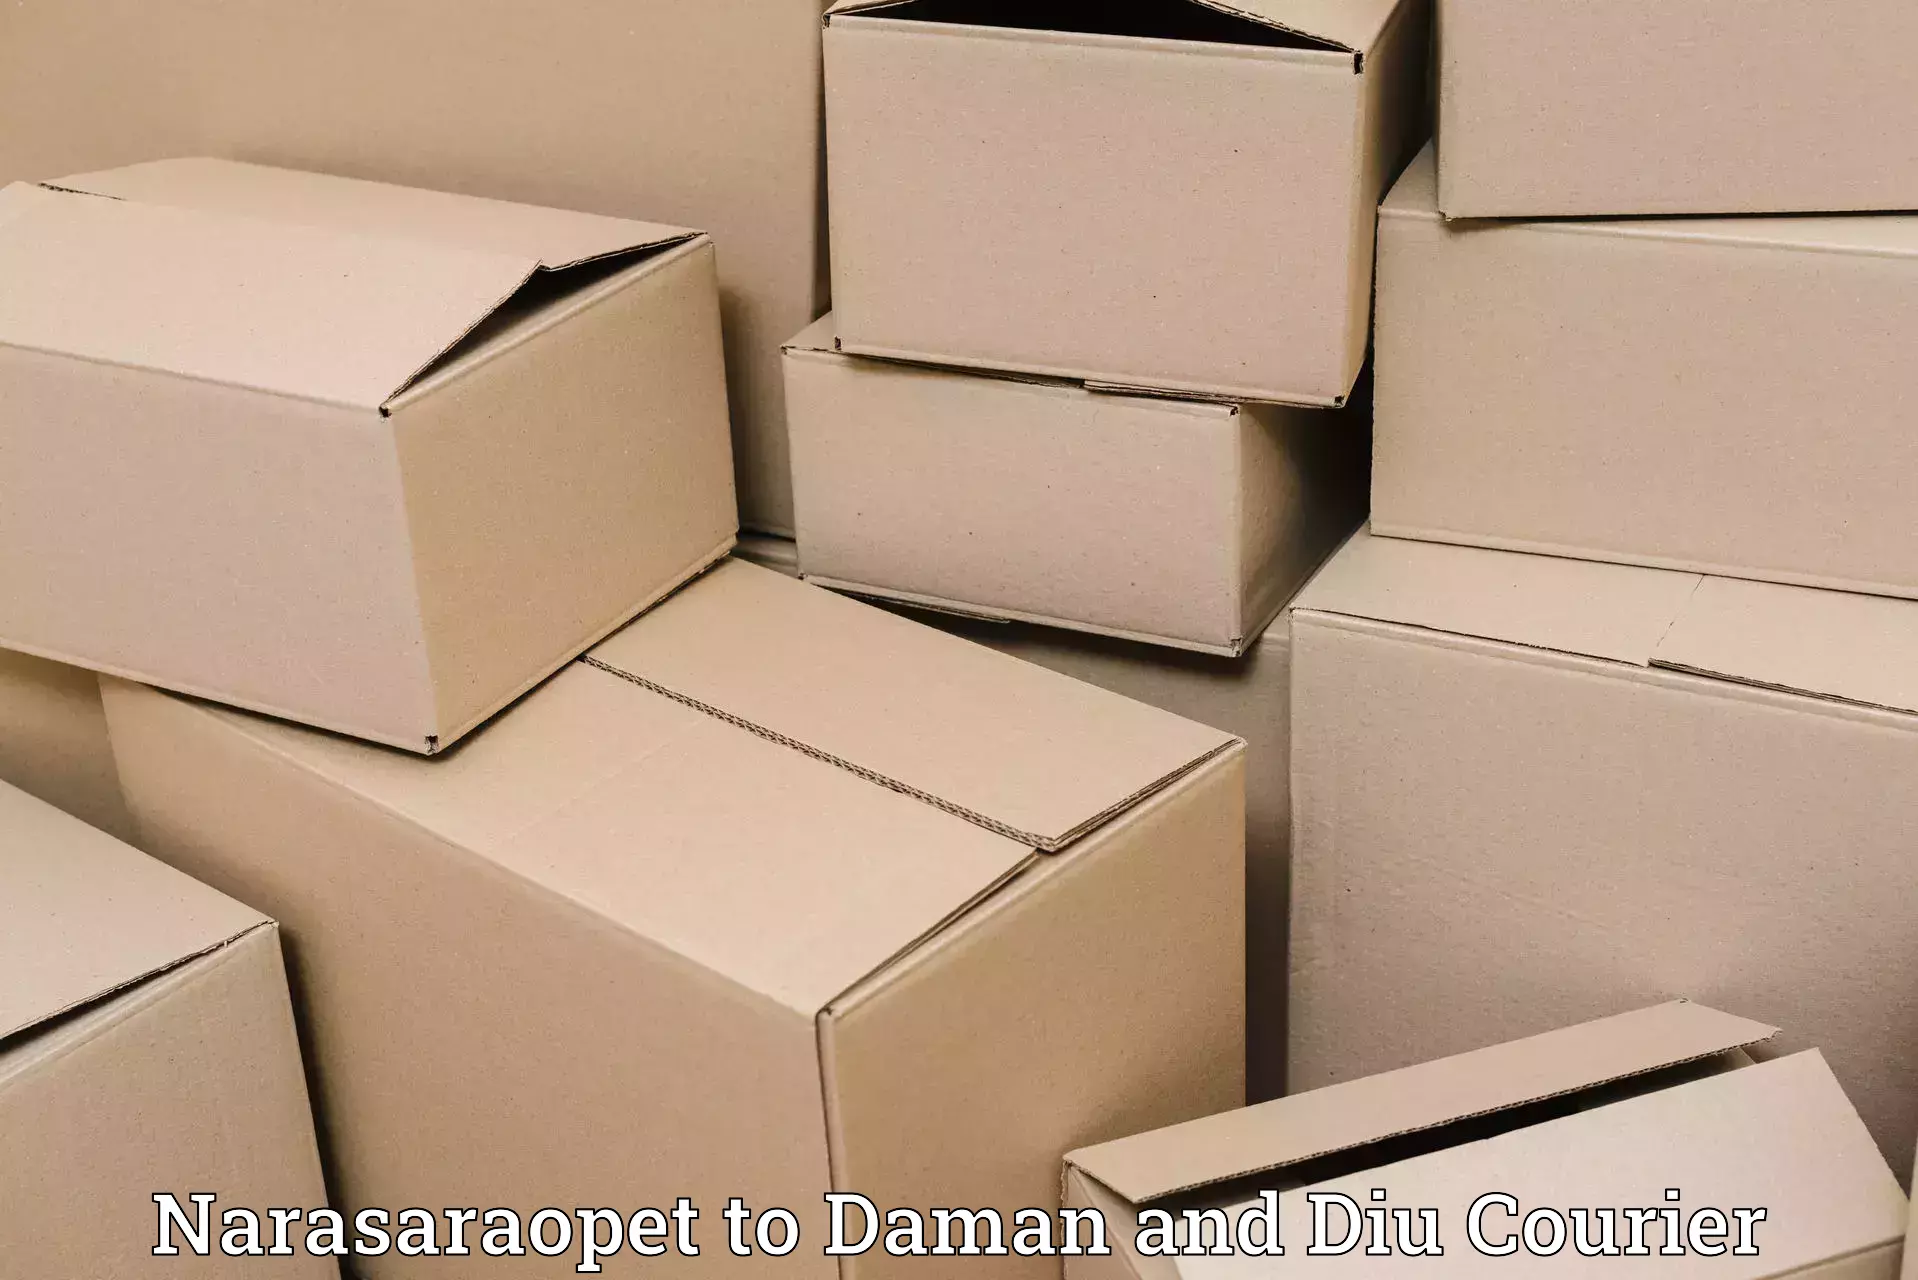 High-capacity parcel service Narasaraopet to Diu